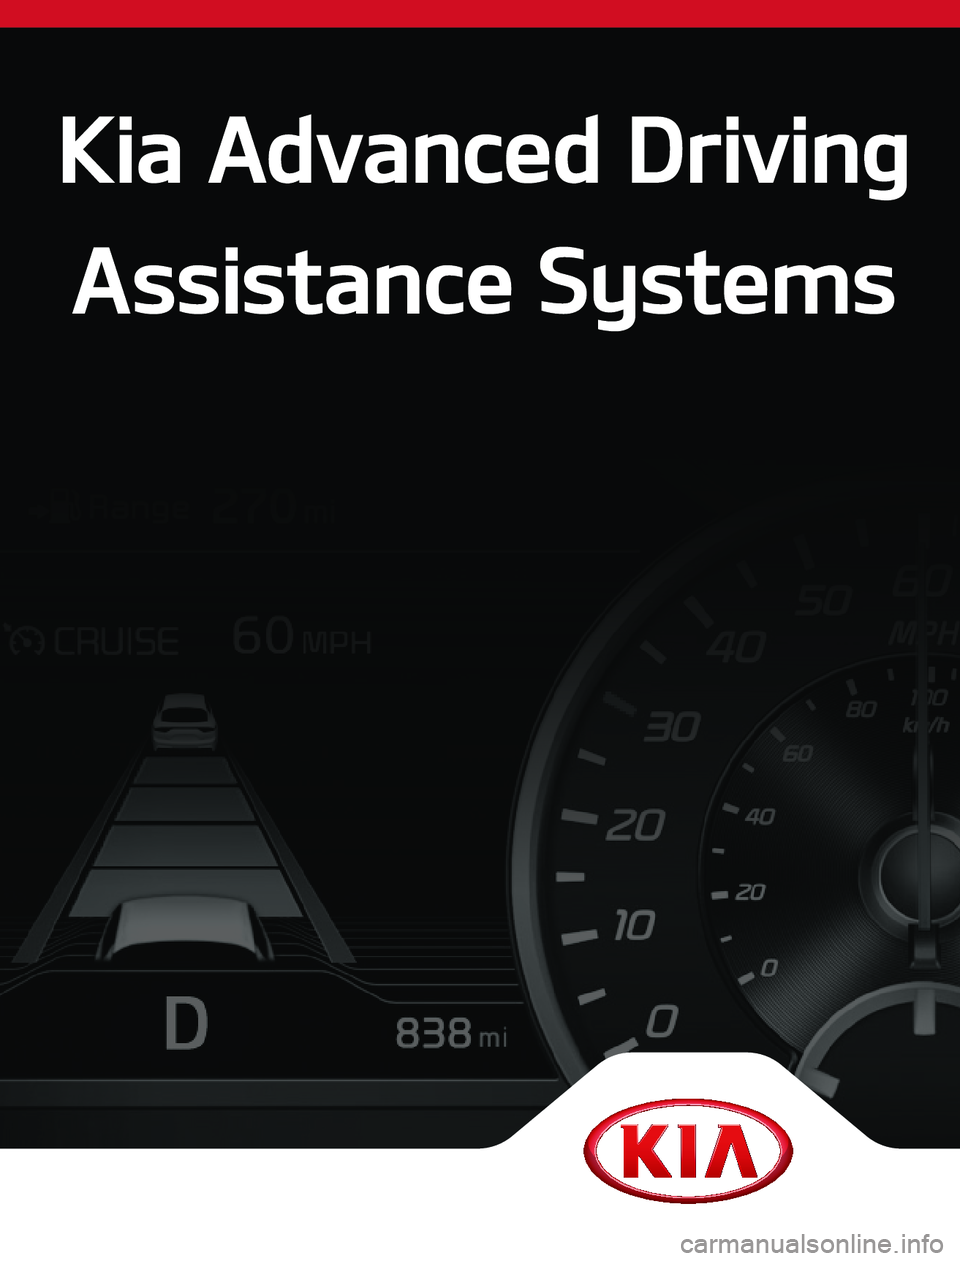 KIA K900 2020  Advanced Driving Assistance System Kia Advanced Driving 
Assistance Systems               